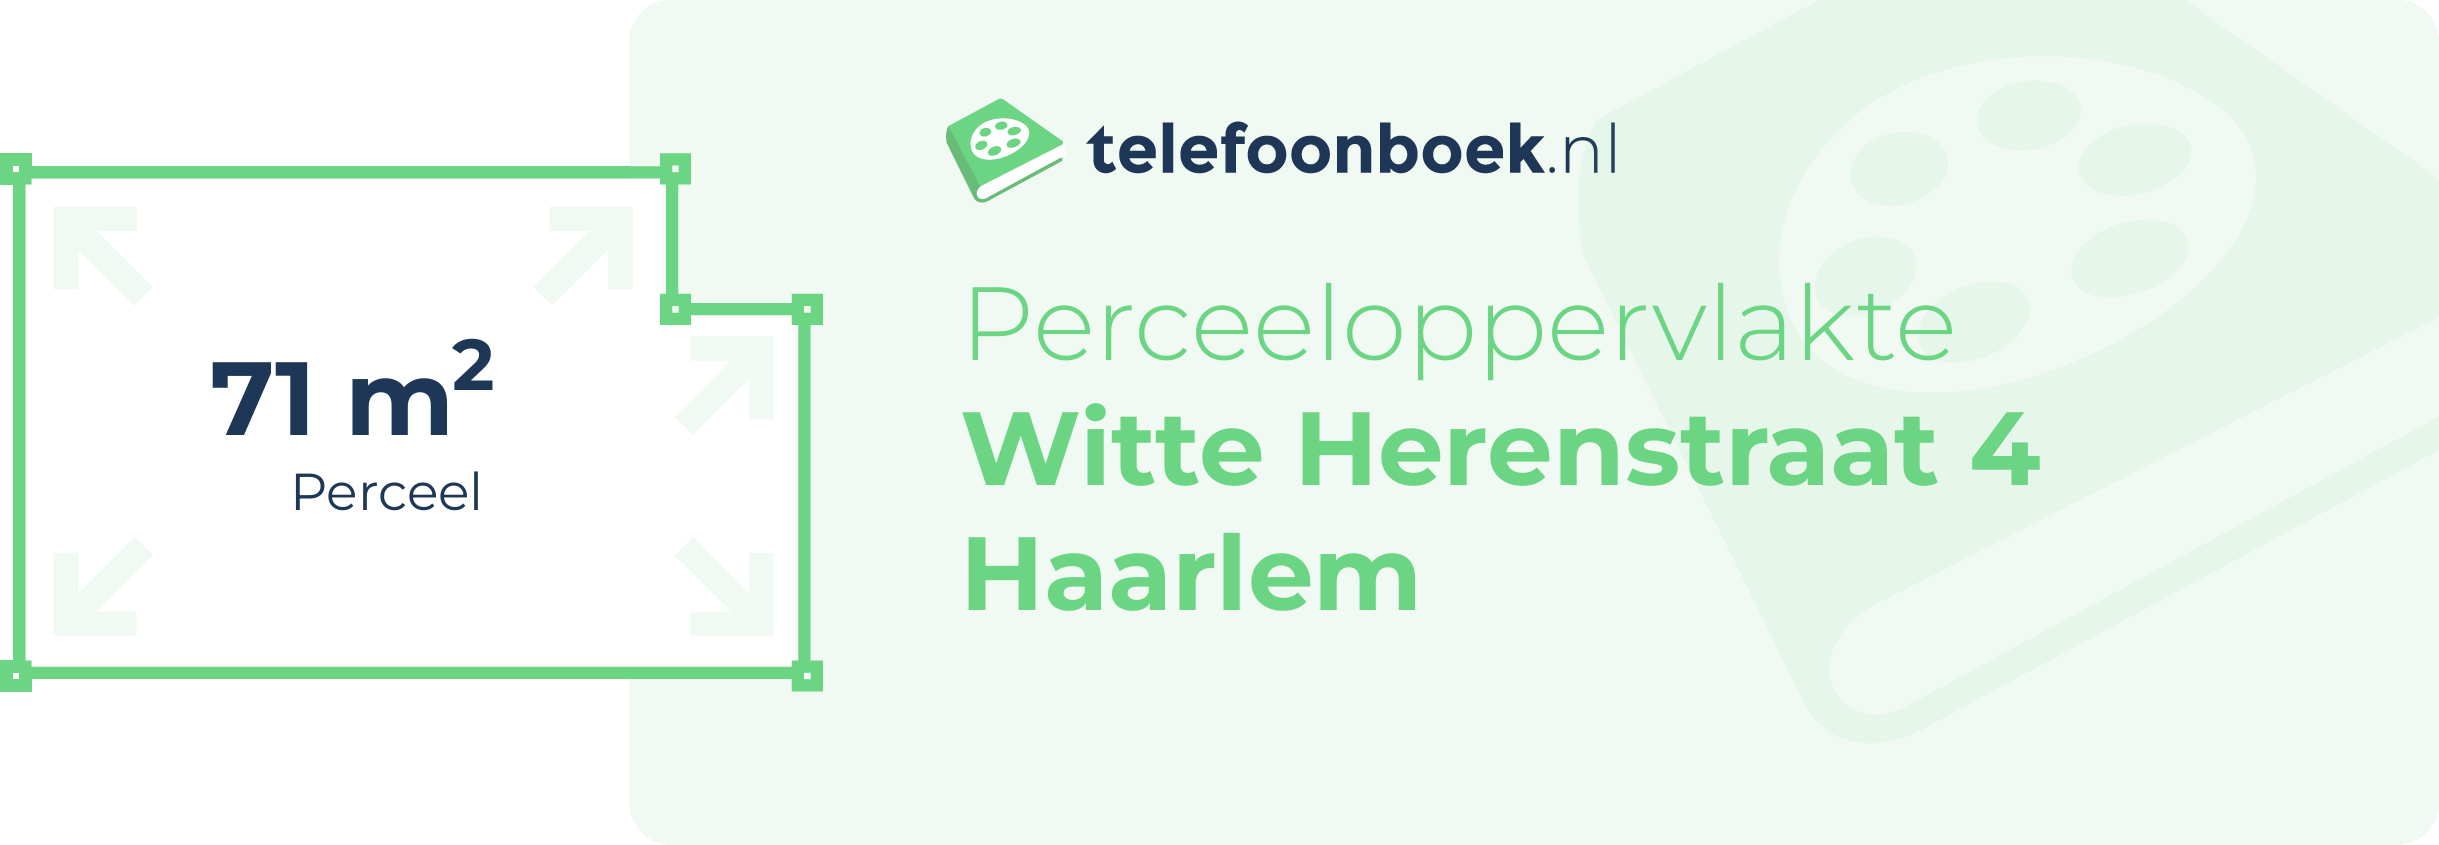 Perceeloppervlakte Witte Herenstraat 4 Haarlem